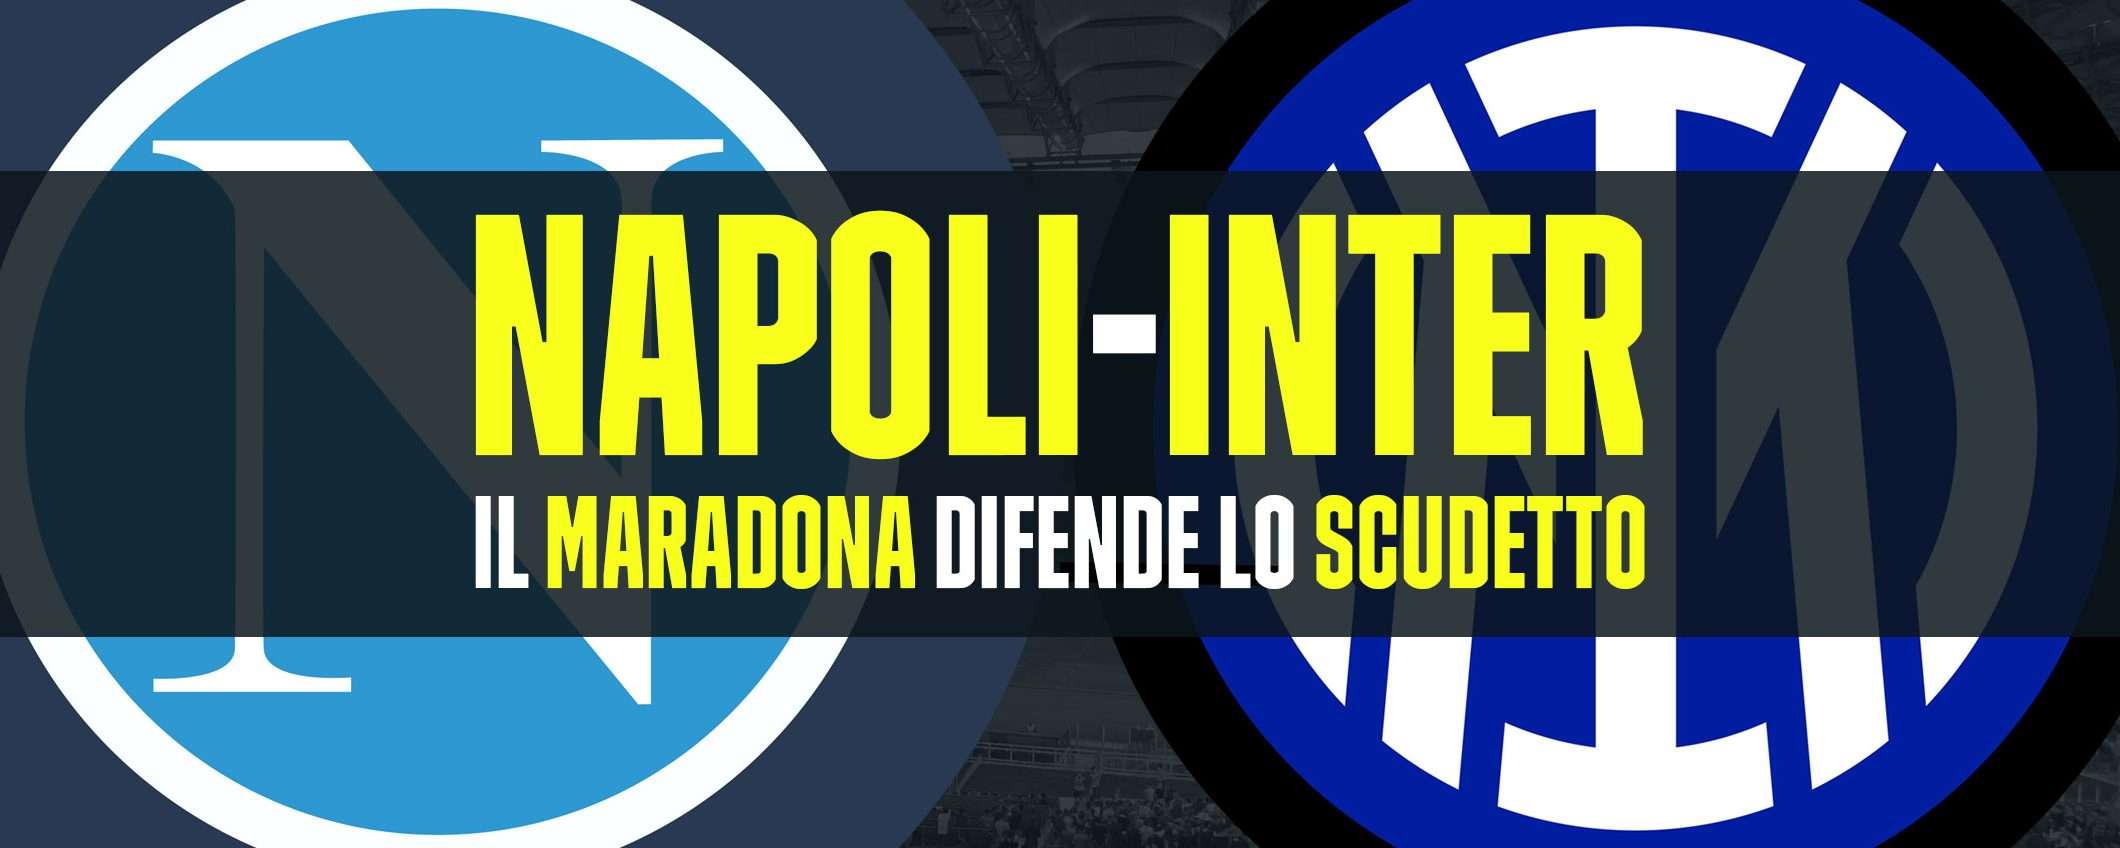 Napoli-Inter: il Maradona per difendere lo scudetto